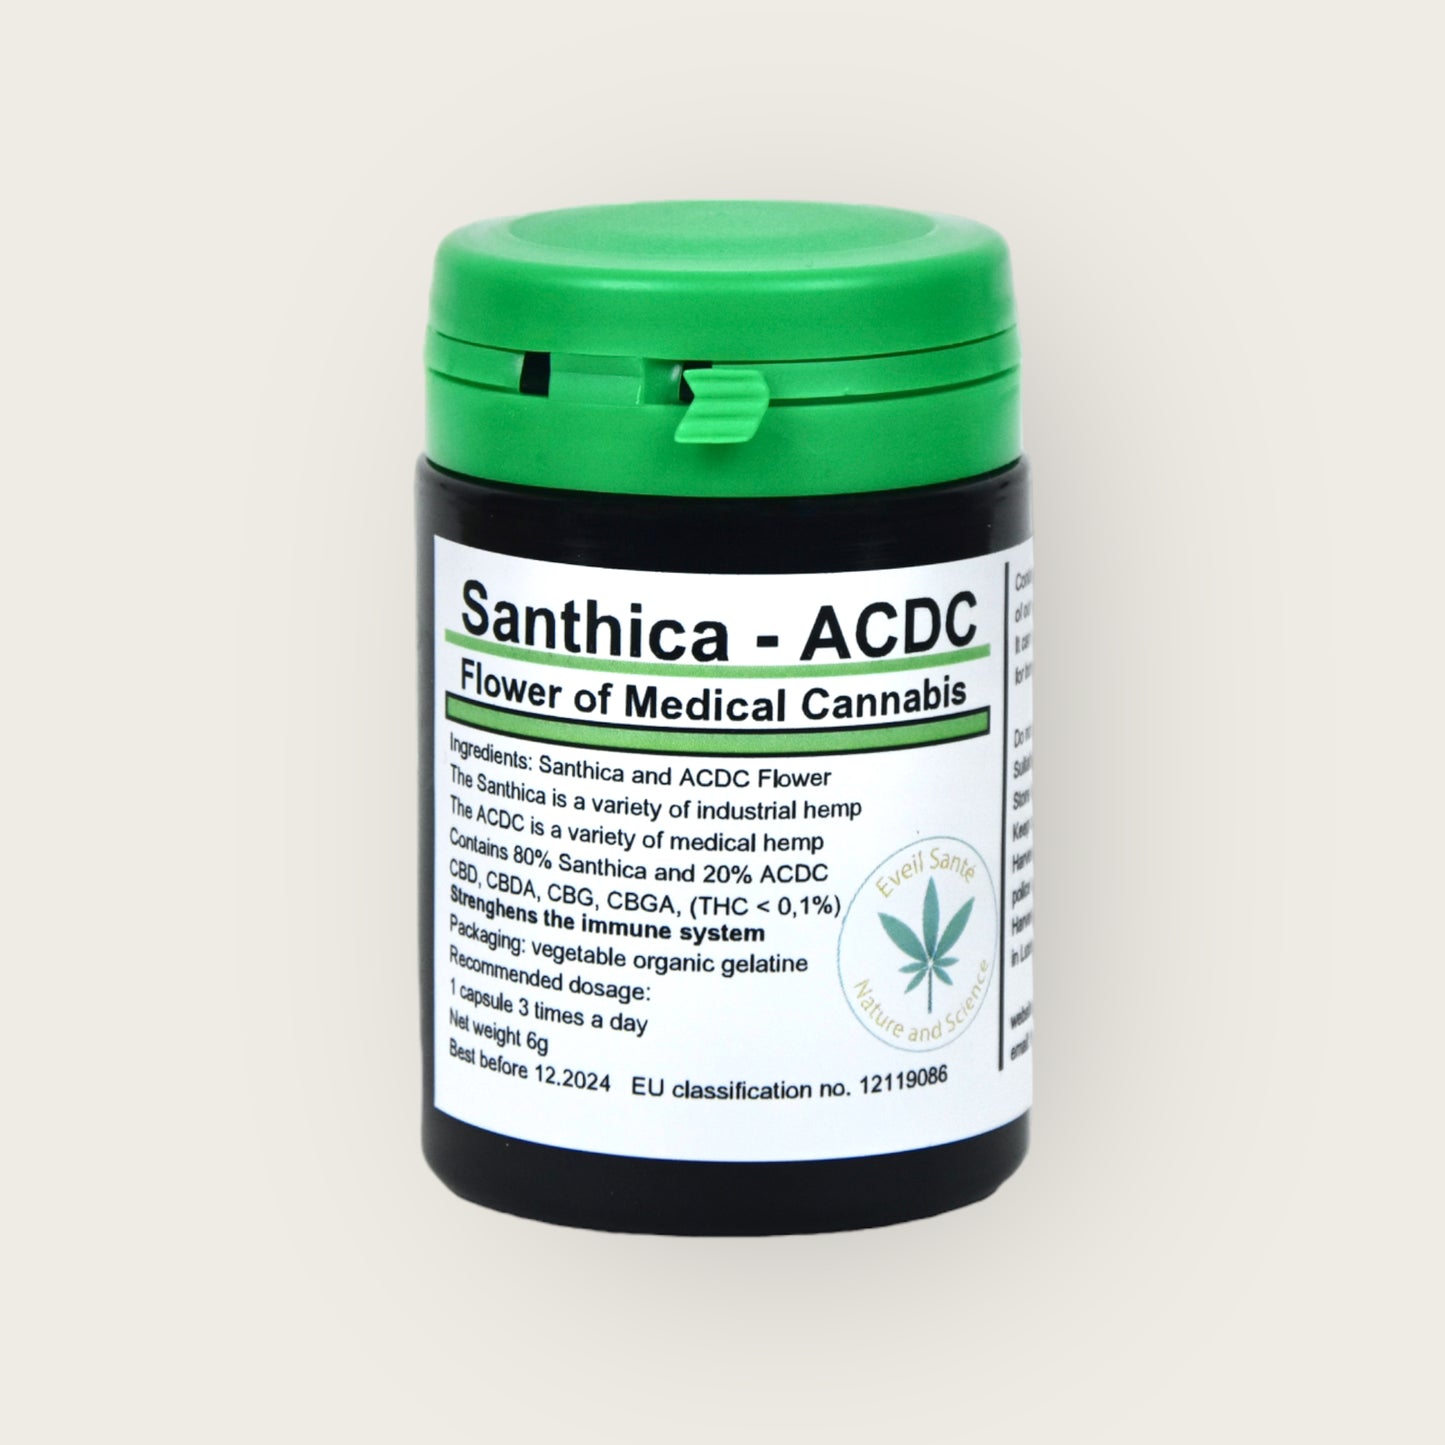 Santhica - ACDC Capsules